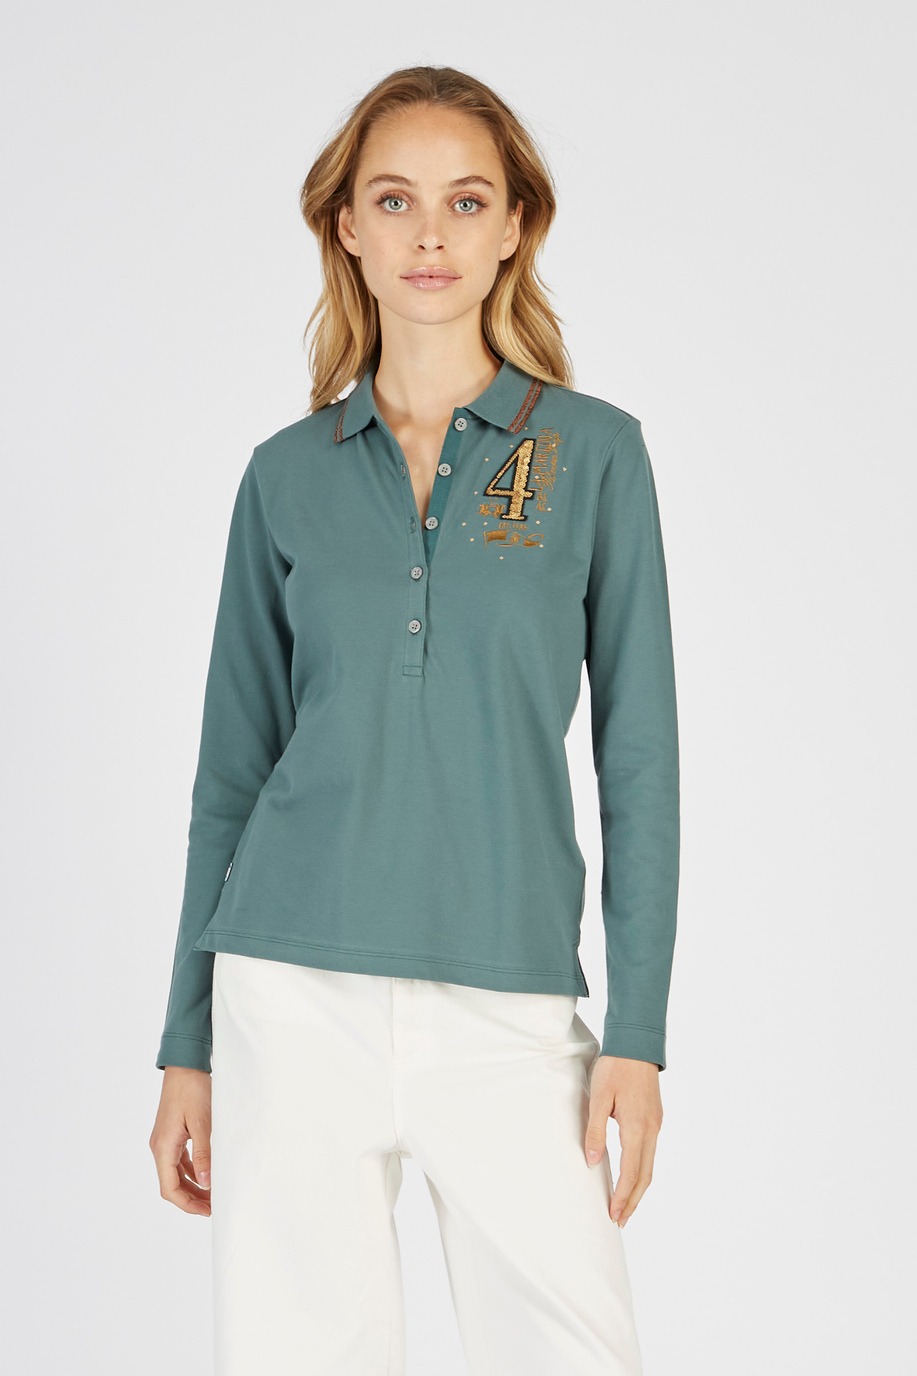 Langarm-Poloshirt Argentina aus elastischer Baumwolle in regulärer Passform für Damen - Preview | La Martina - Official Online Shop